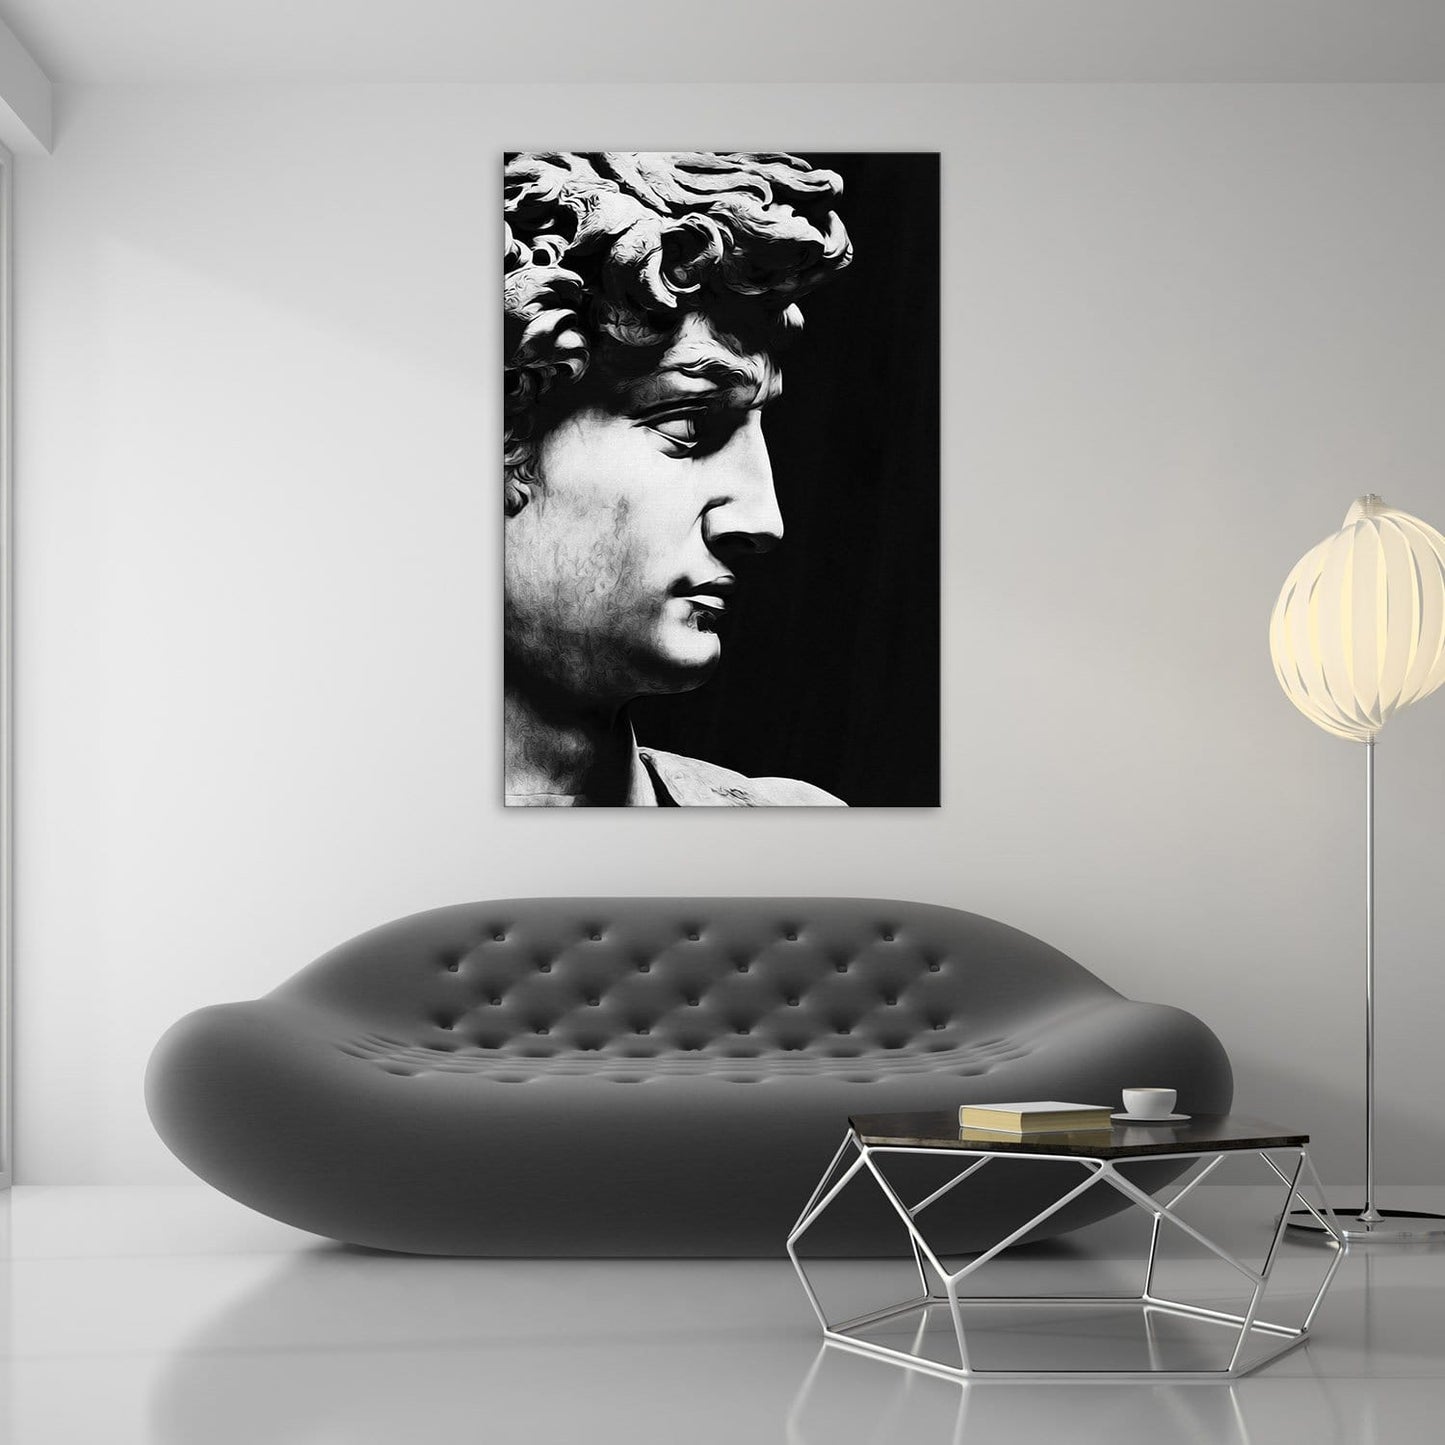 David Sculpture Black & White Wall Art | Inspirational Wall Art Motivational Wall Art Quotes Office Art | ImpaktMaker Exclusive Canvas Art Portrait